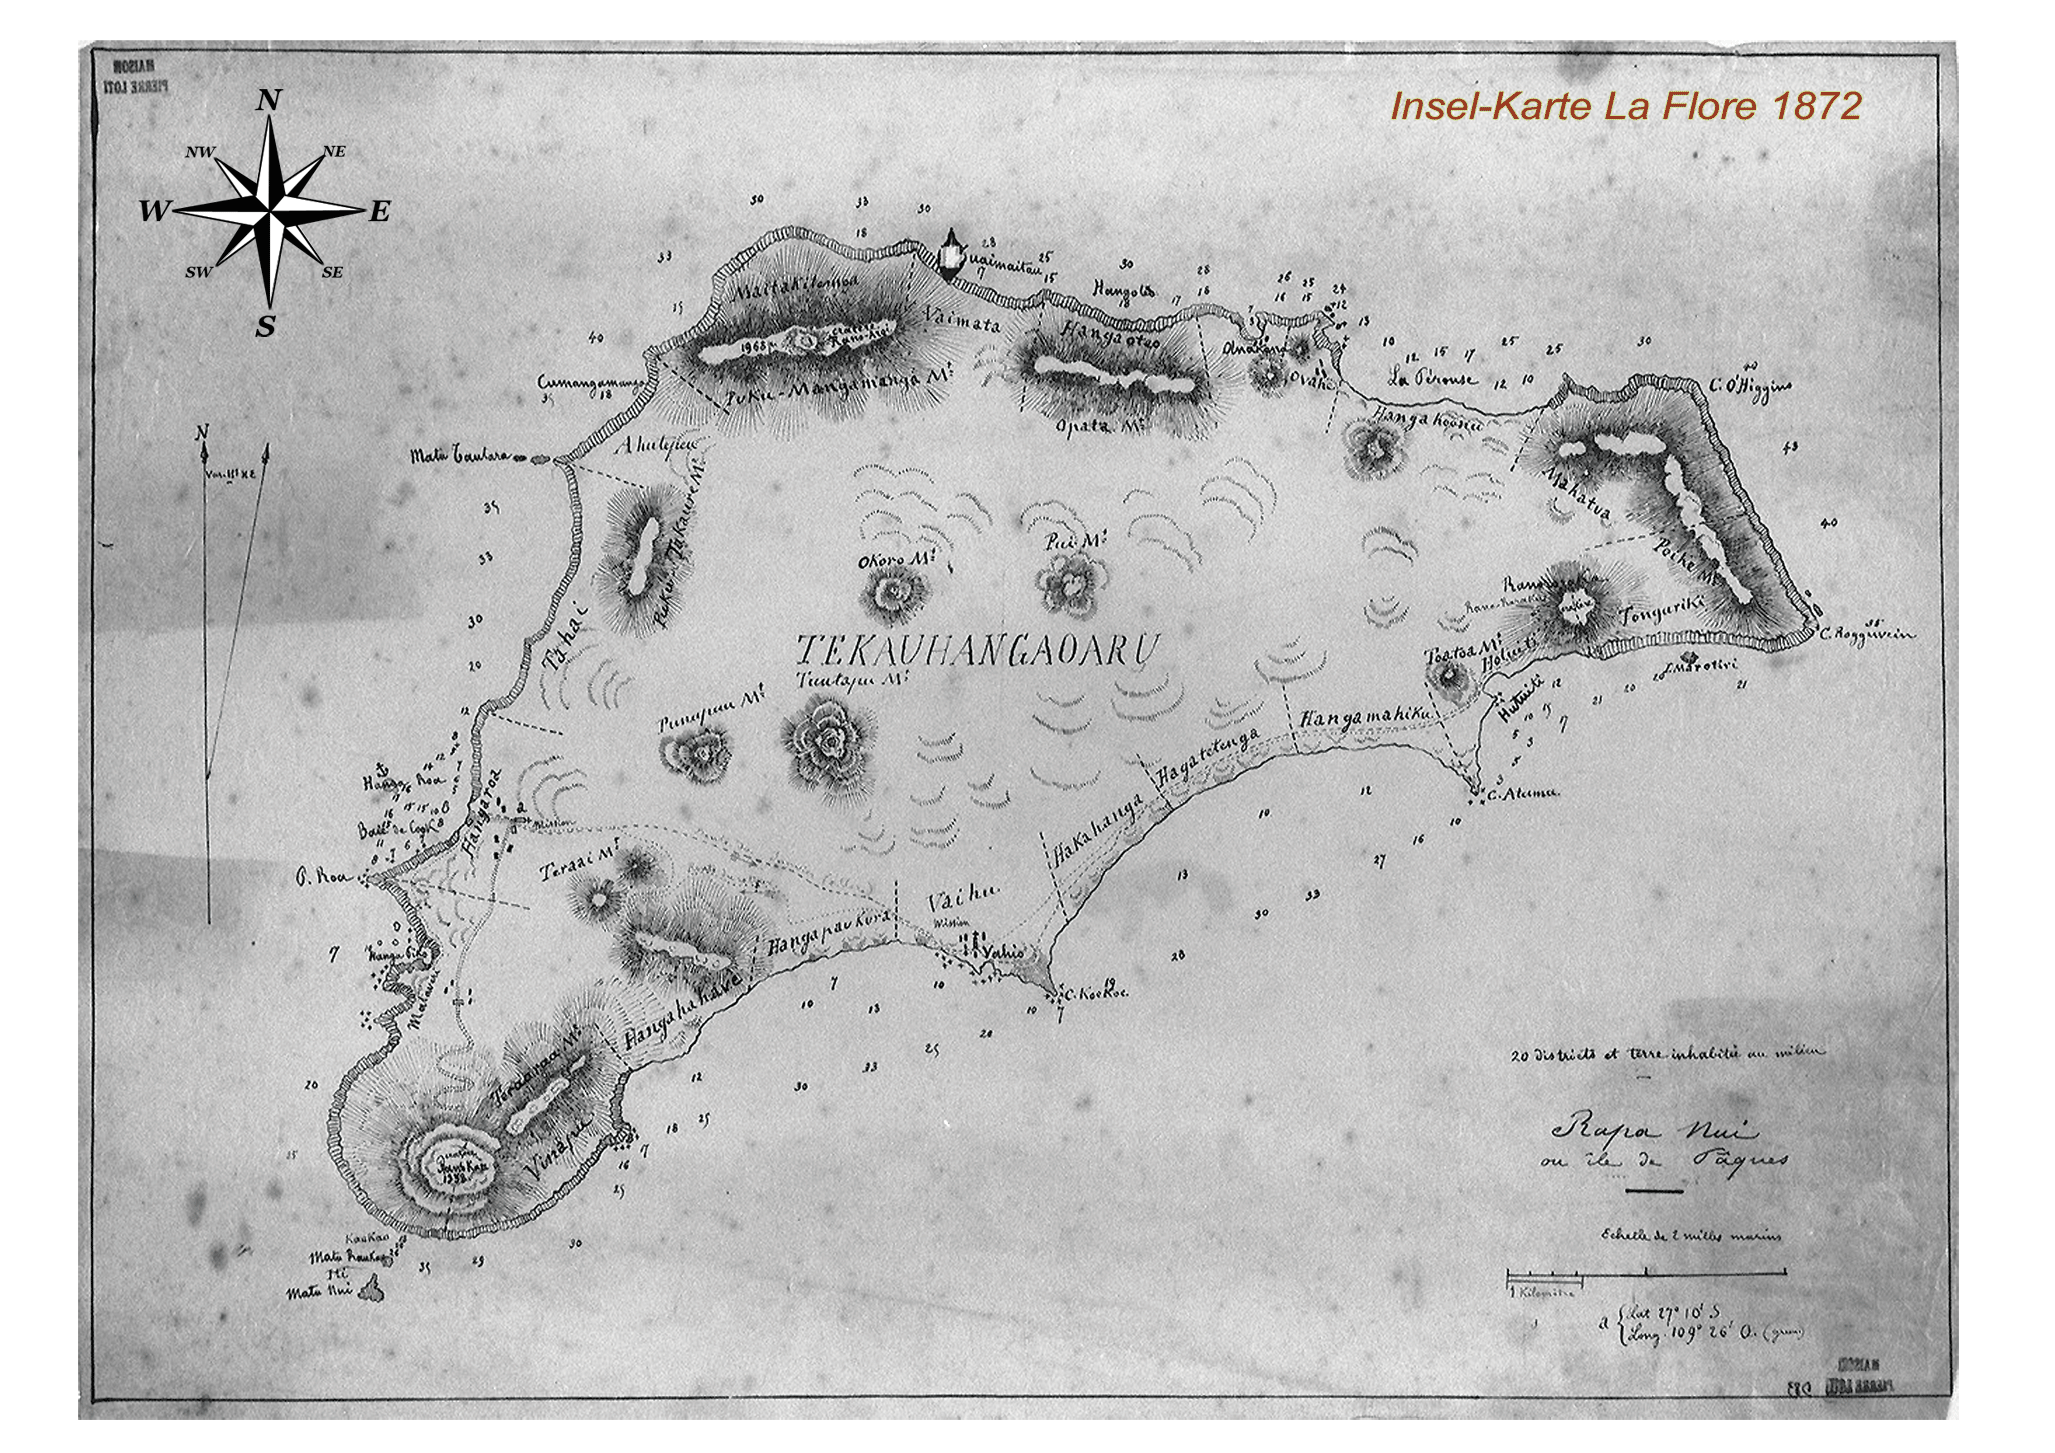 Karte von der Osterinsel aus dem Jahre 1872 von La Flore